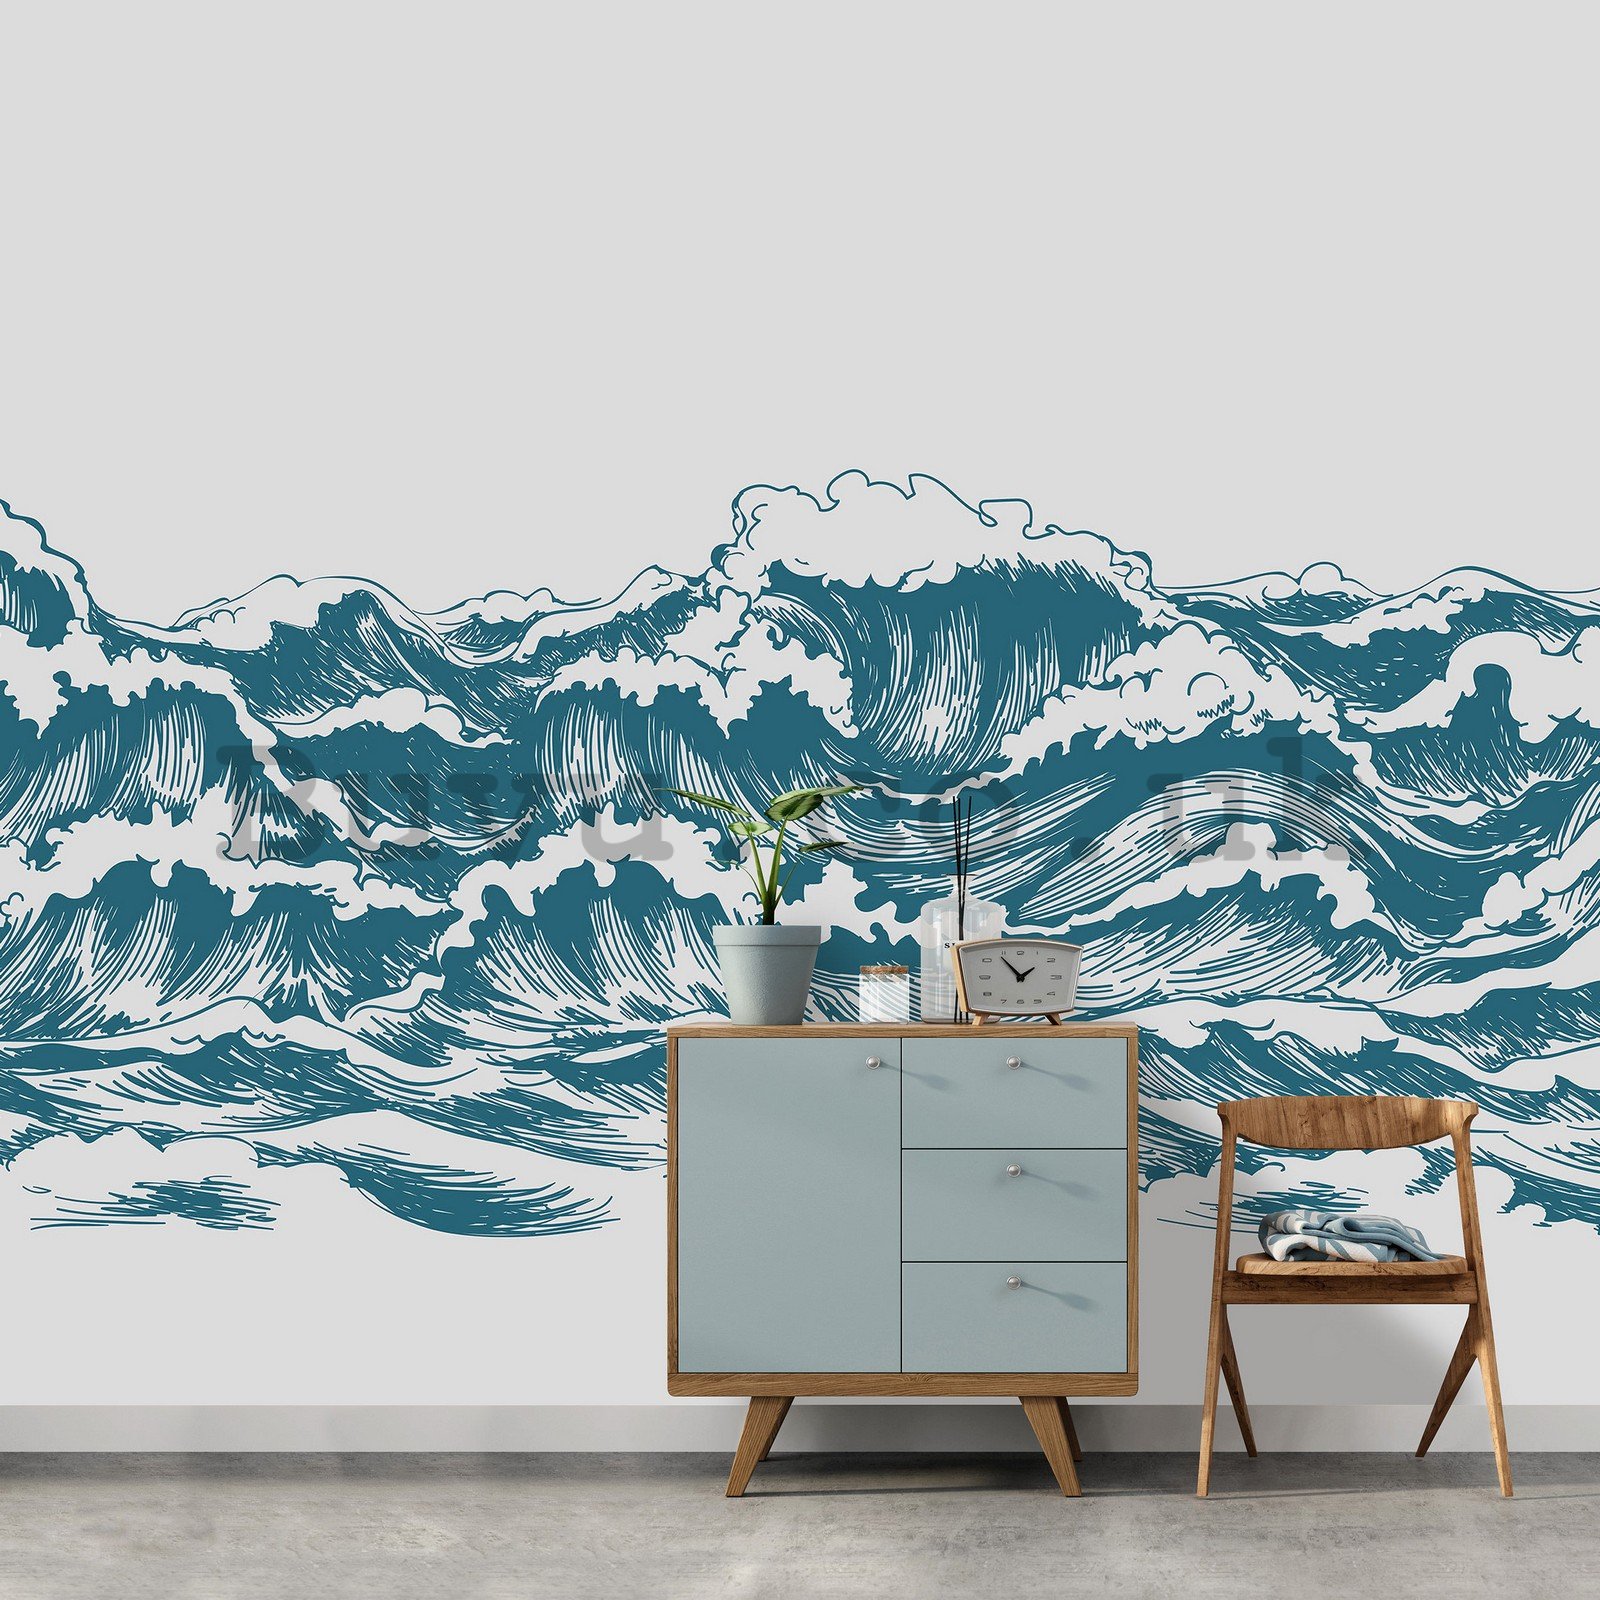 Wall mural vlies: Painted waves - 254x184 cm